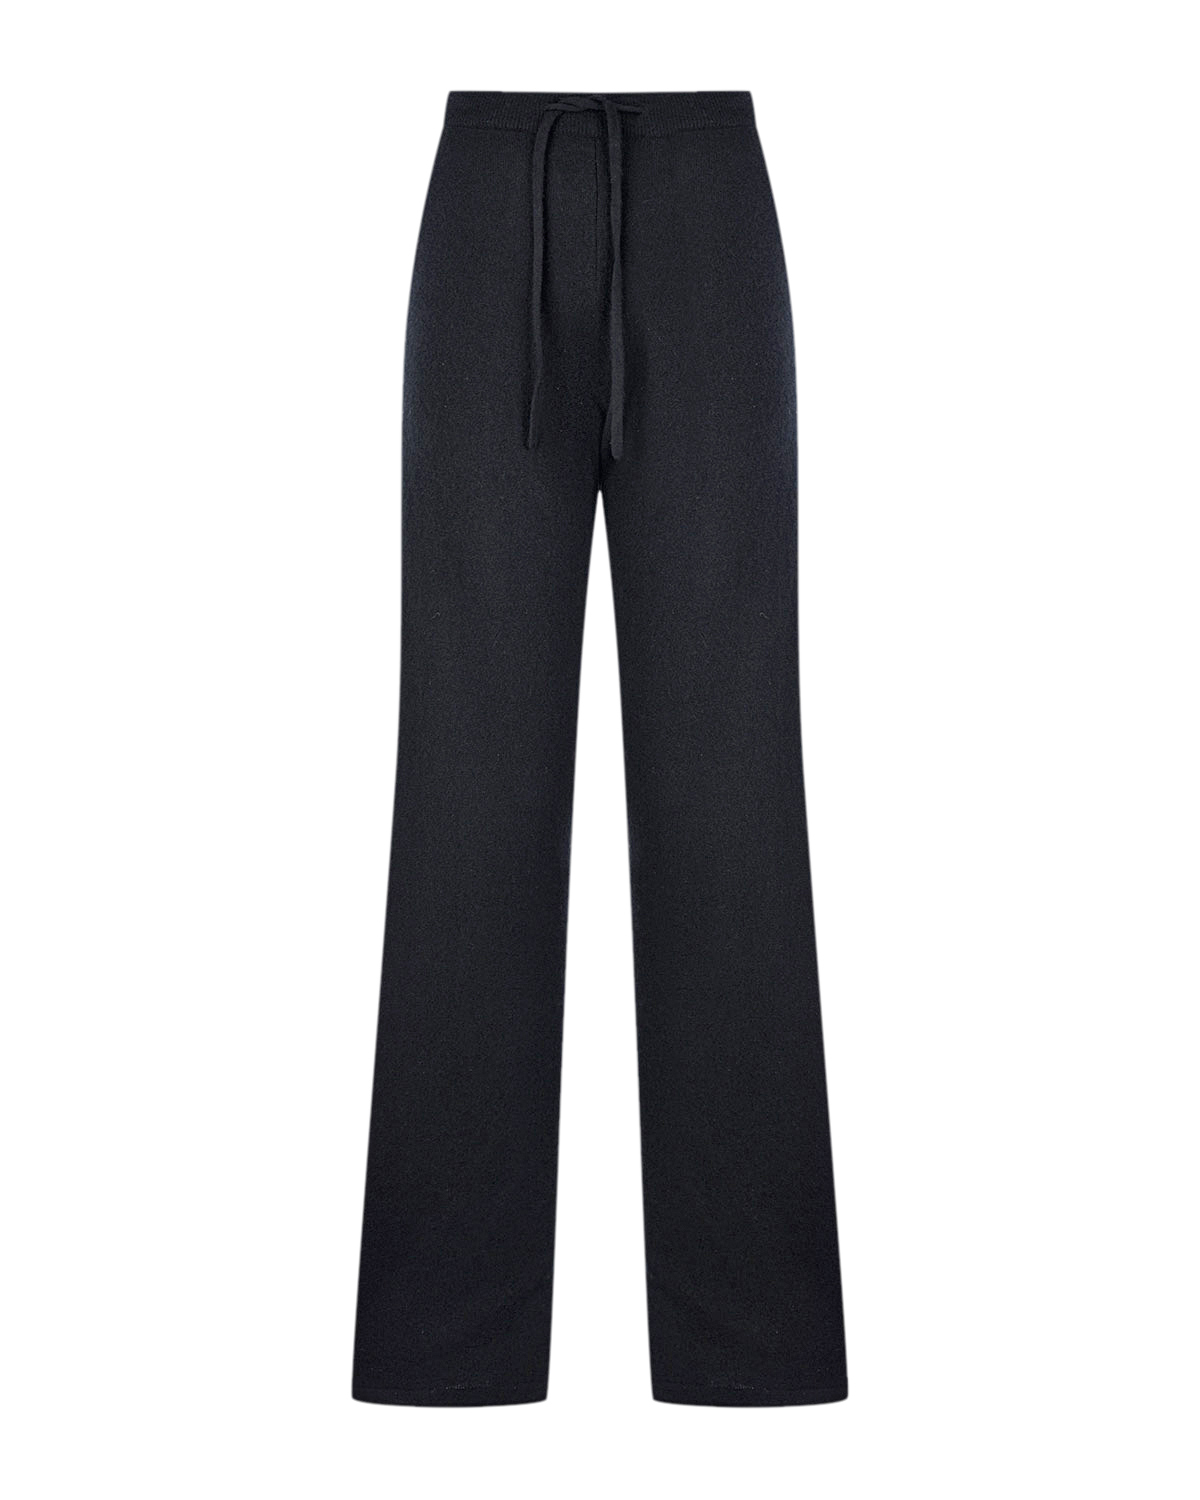 Черные брюки с поясом на кулиске Chinti&Parker, размер 38, цвет черный - фото 1